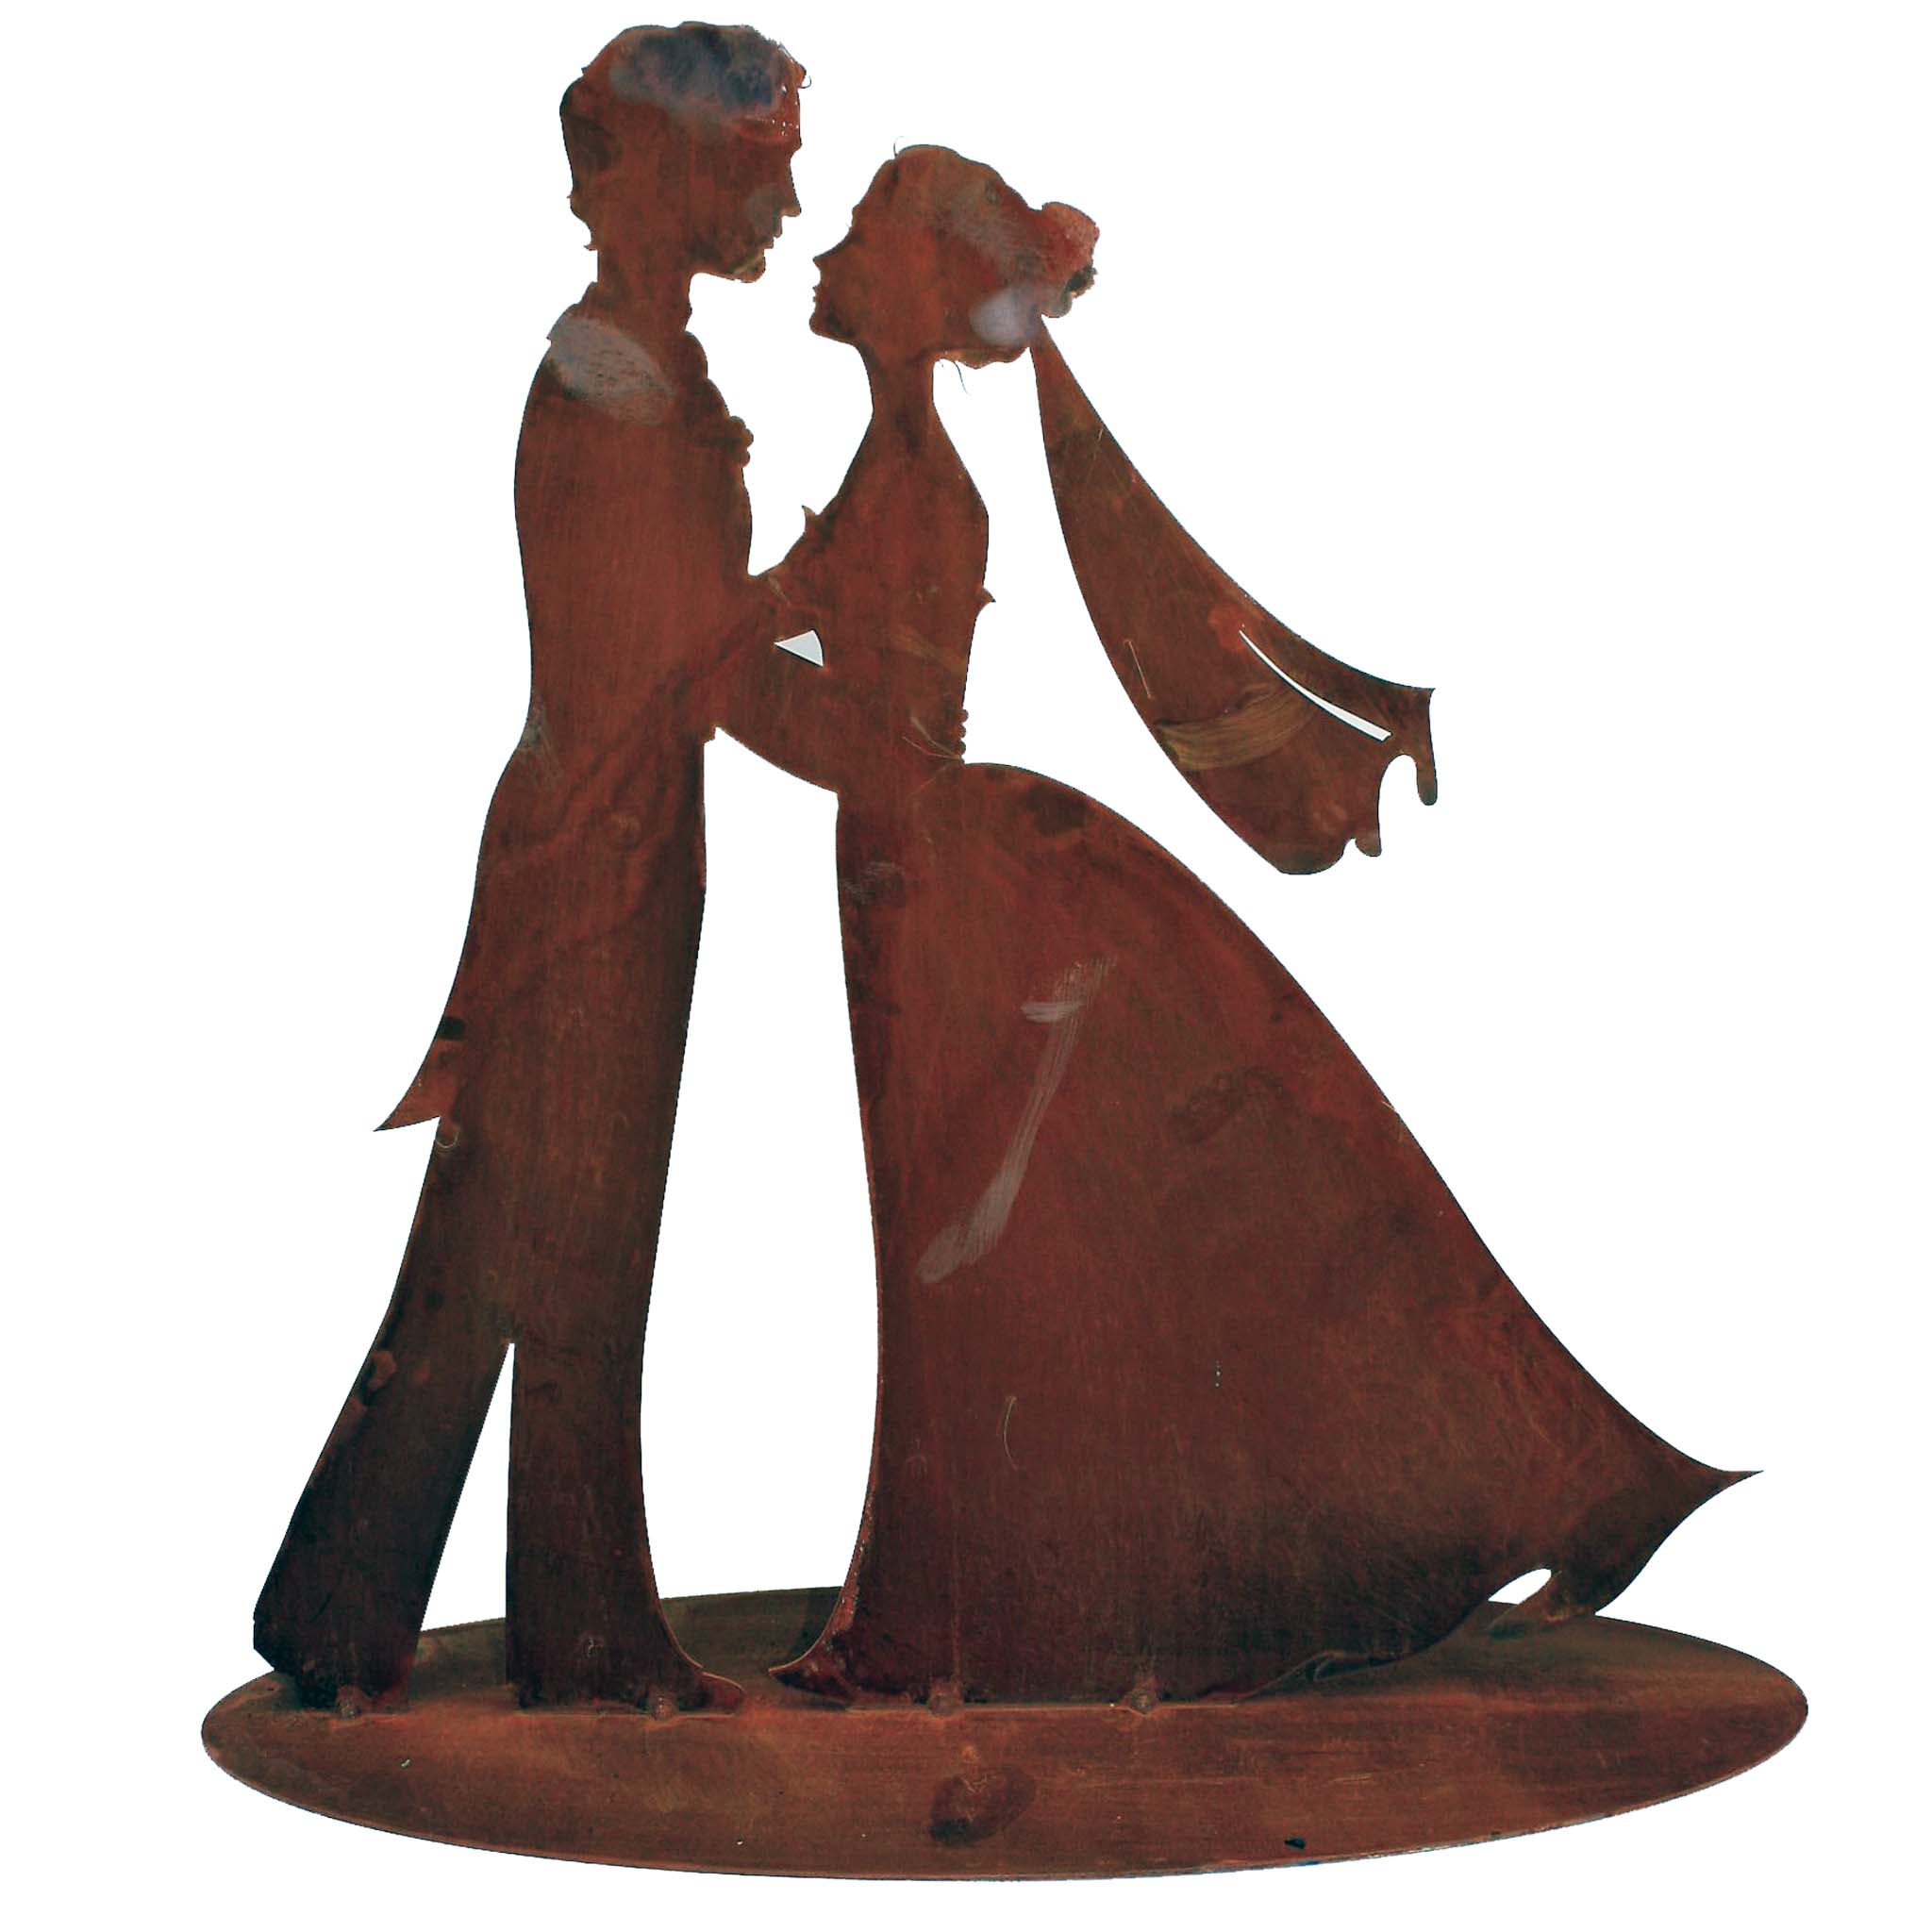 💍 Romantisches Brautpaar aus Rost-Metall als Hochzeitsdeko oder Geschenk. Natürliche Rostpatina und Edelrost-Finish verleihen Vintage-Charme